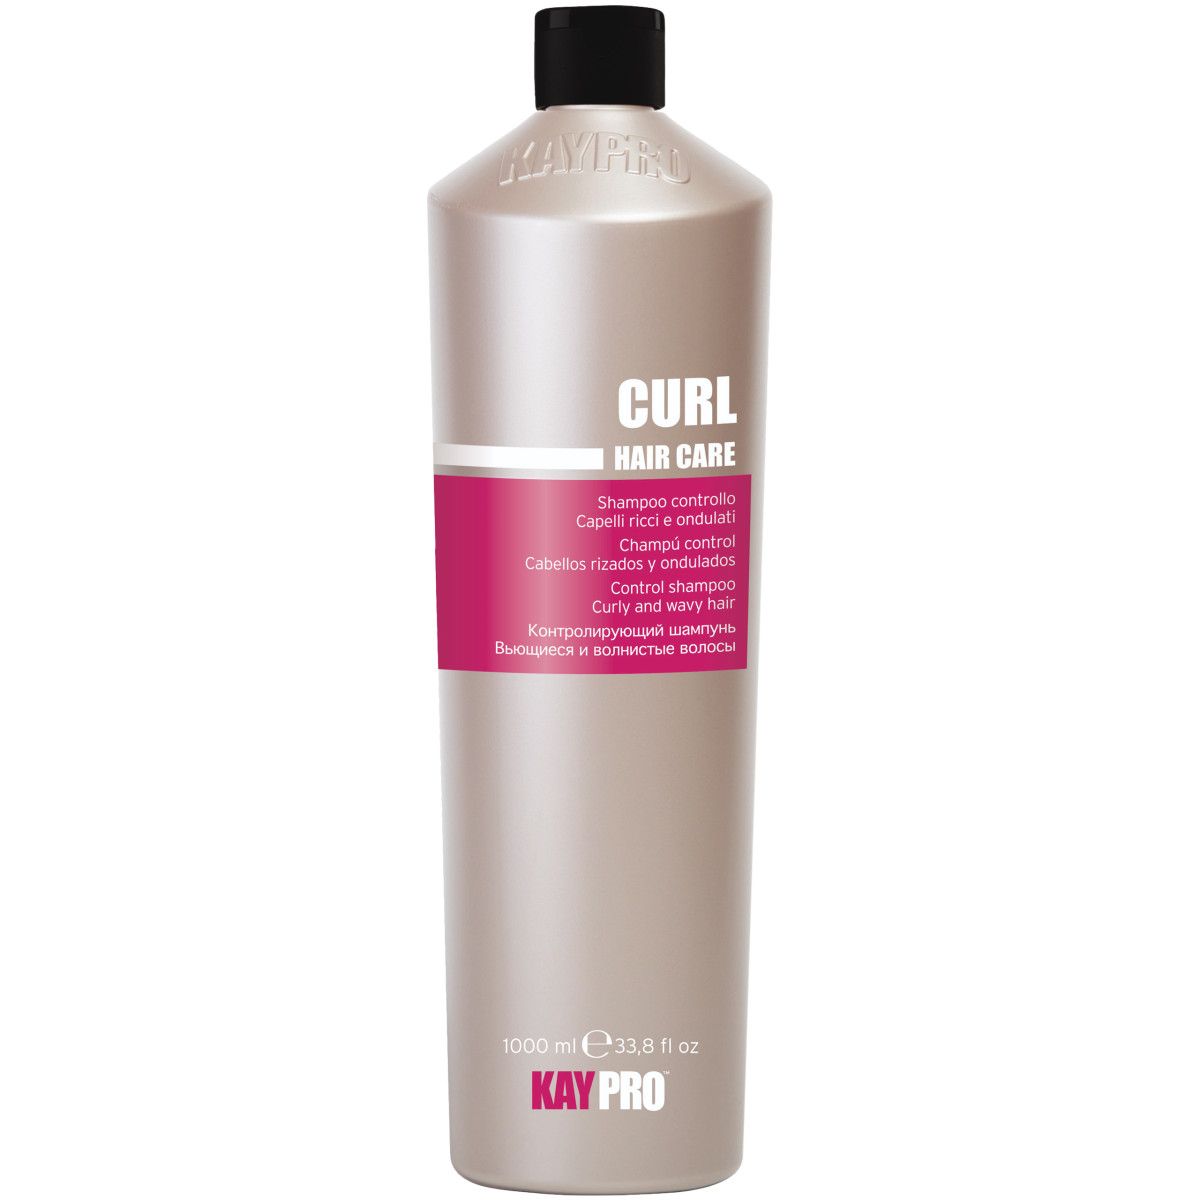 KayPro Curl Hair Care - szampon regenerujący do włosów kręconych, 1000ml